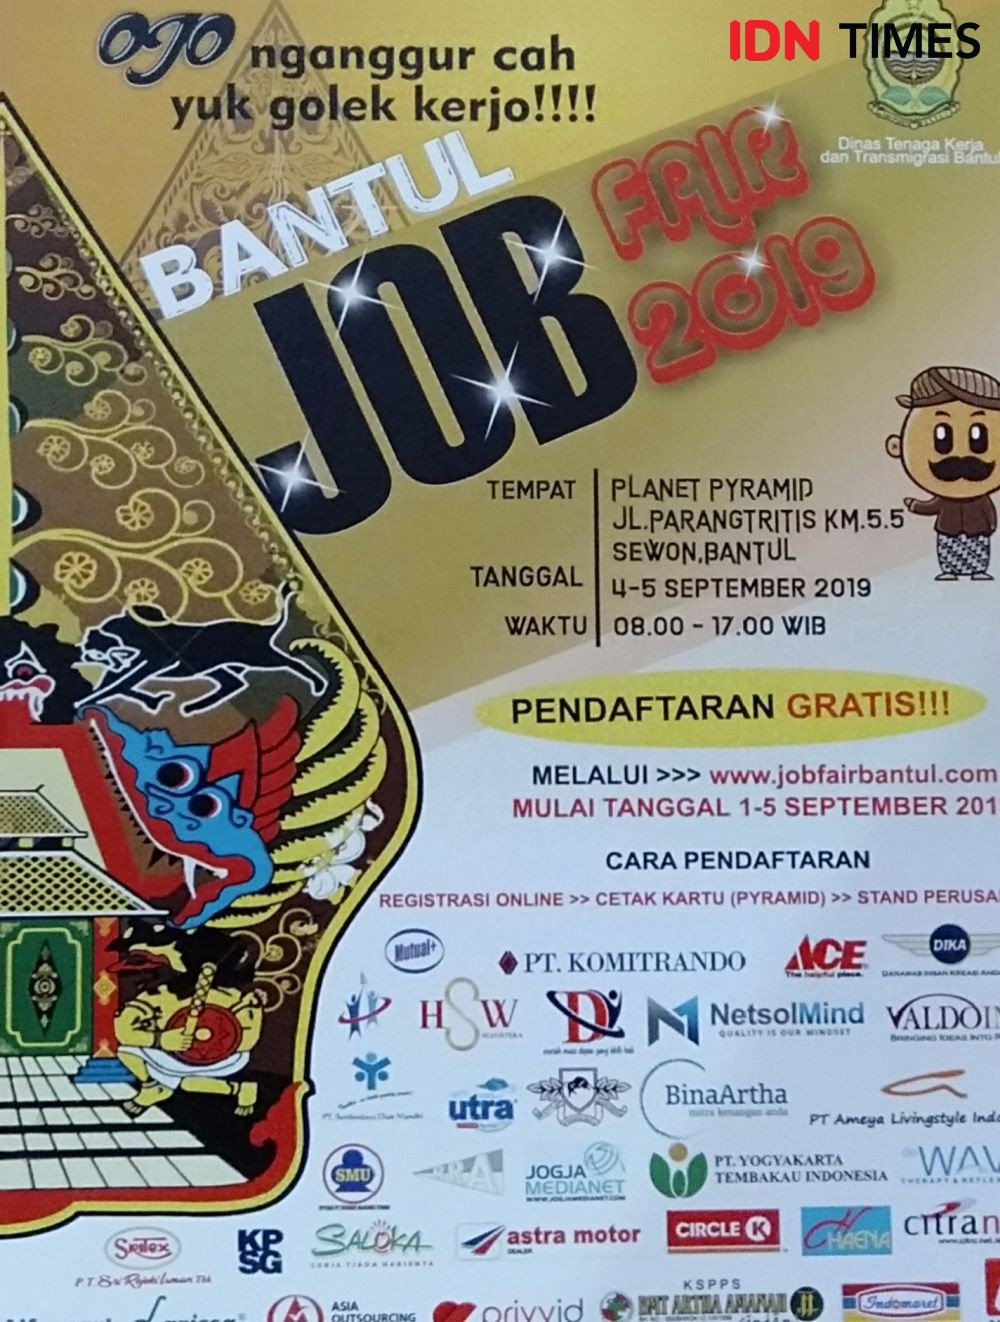 5 Ribu Lebih Lowongan Kerja Ditawarkan di Bantul Job Fair 2019